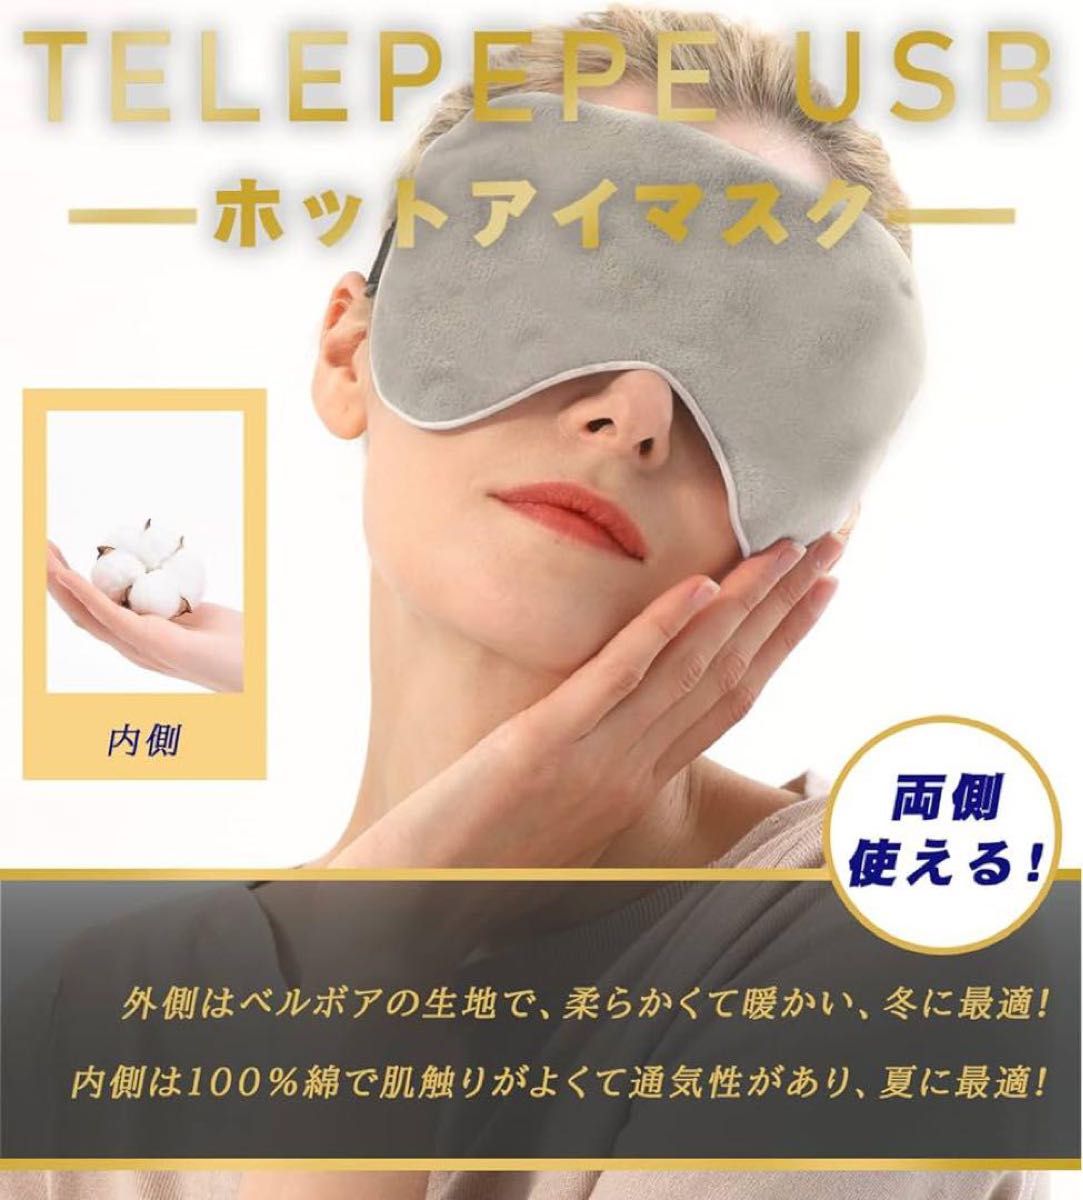 Telepepe 温冷両用 USB ホットアイマスク収納バッグ付き ベルボア